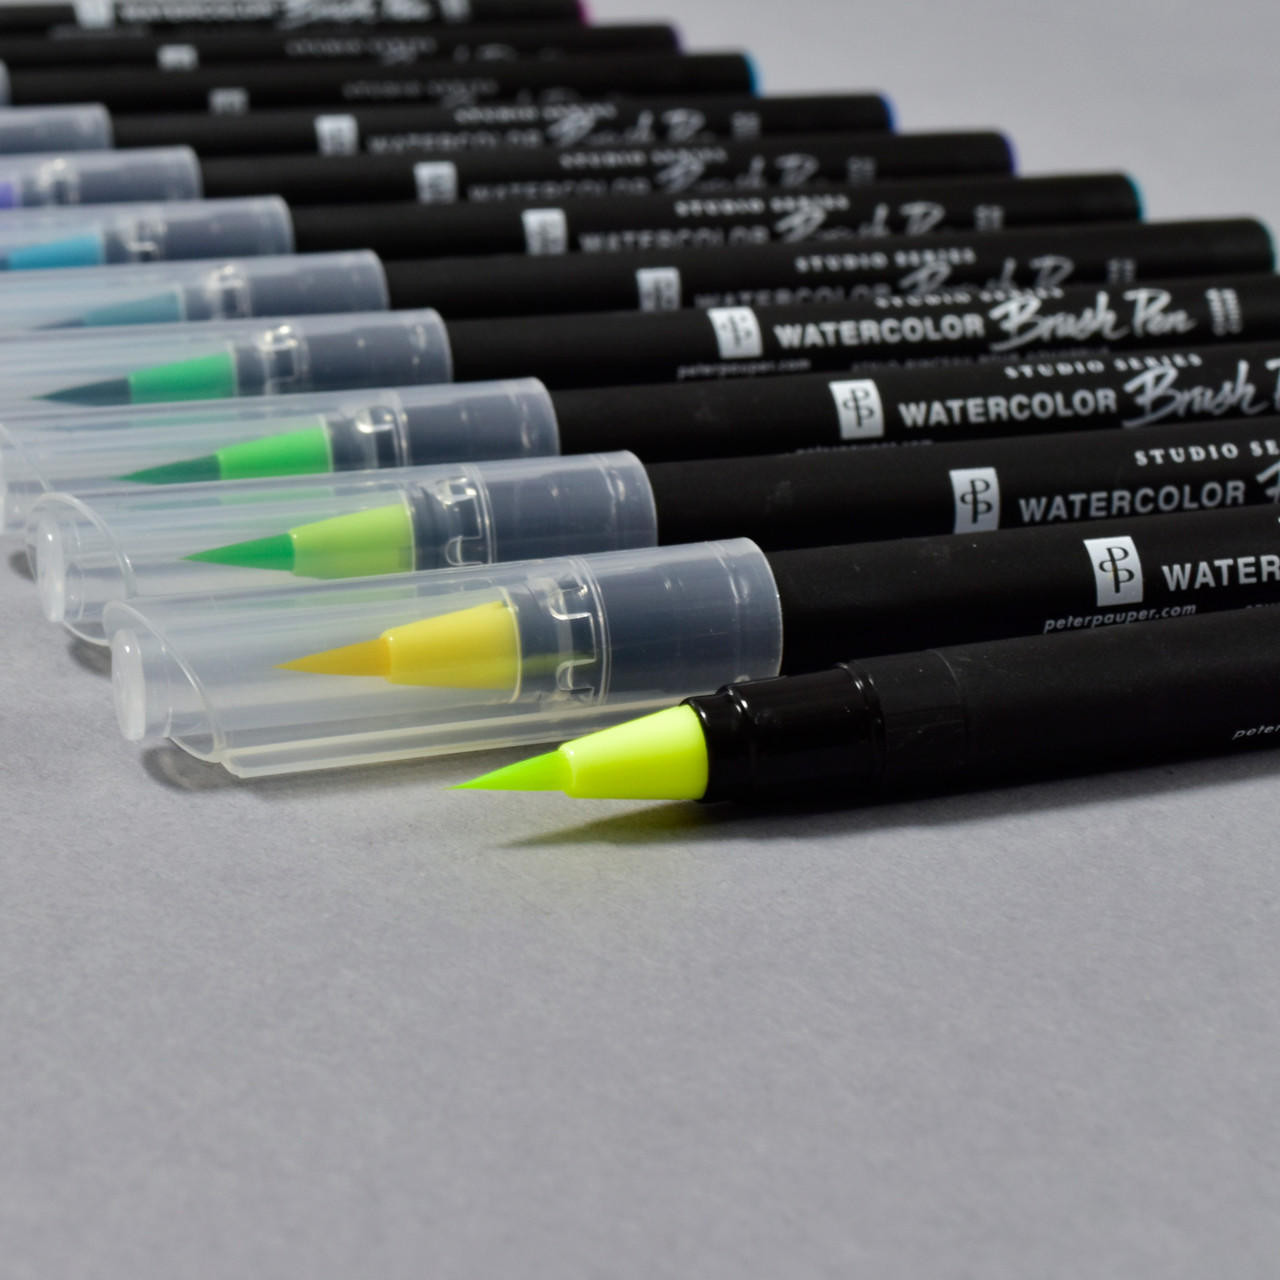 Studio Series Watercolor Brush Pens - Philadelphia Museum Of Art